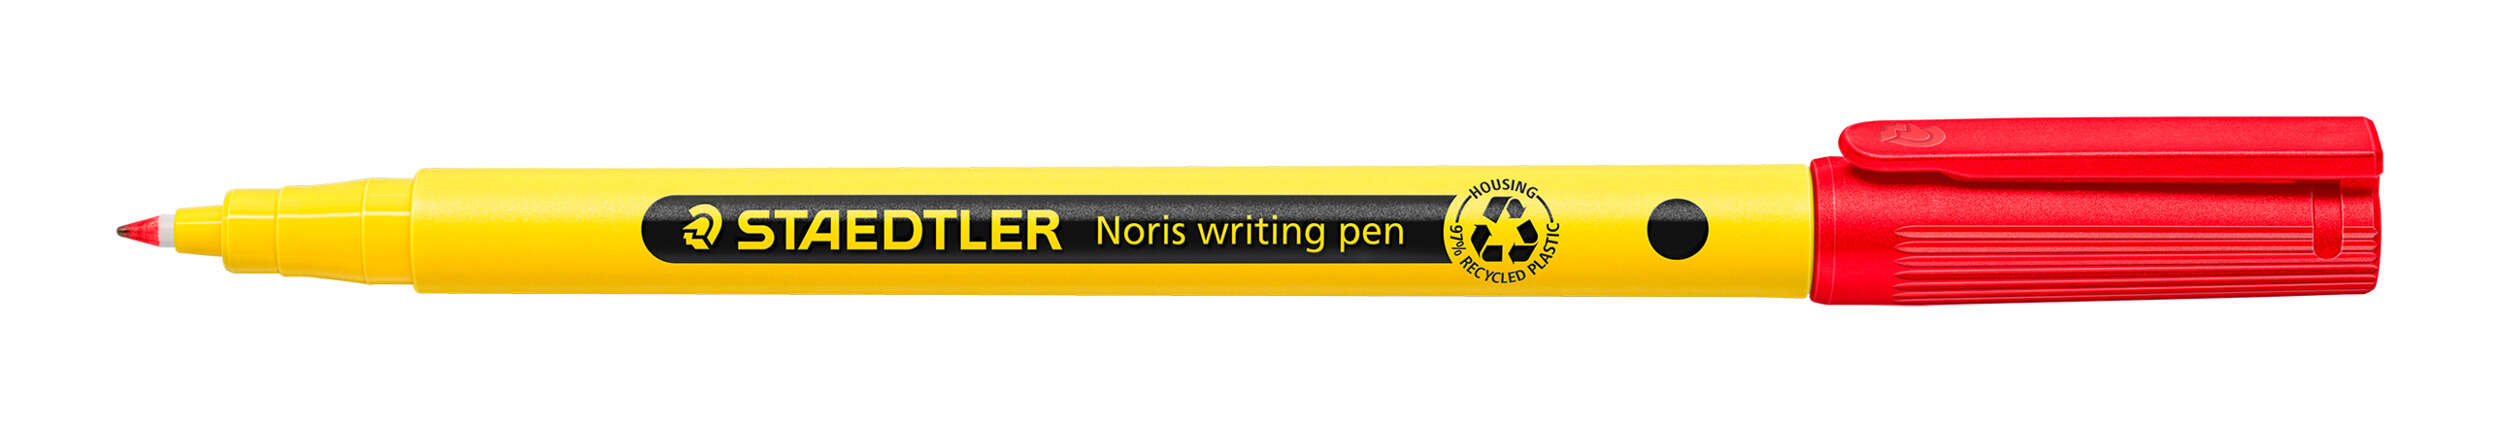 Staedtler 307 Noris Writing Pen Rotulador De Punta Fina - Trazo 0.6Mm Aprox - Tinta Base De Agua - Cuerpo Fabricado En Un 97% De Plastico Reciclado - Color Rojo